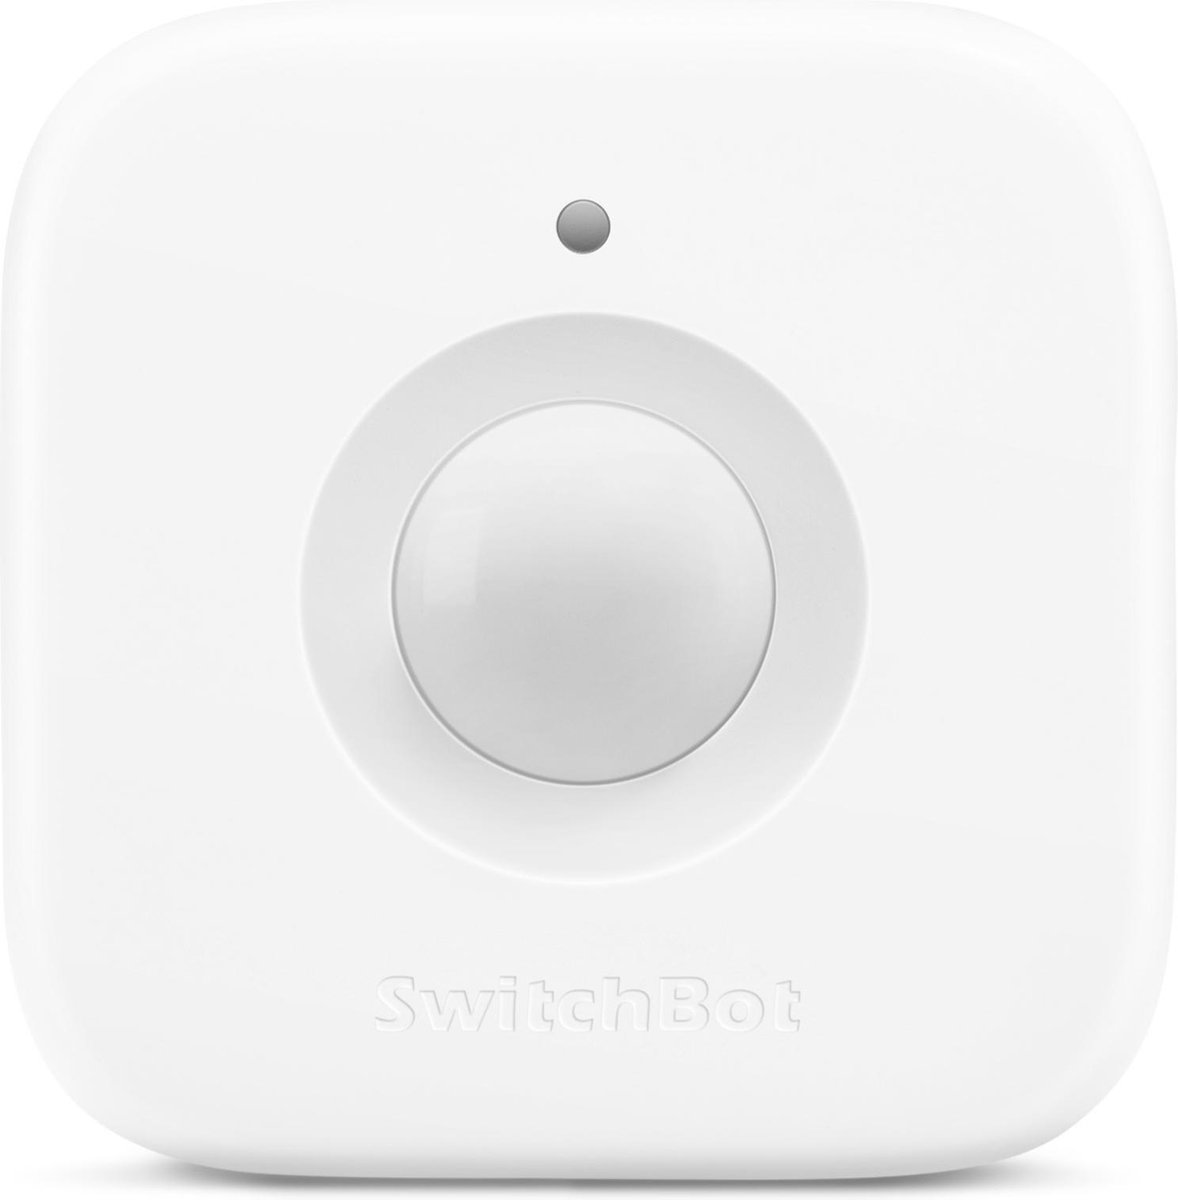 SwitchBot Motion Sensor